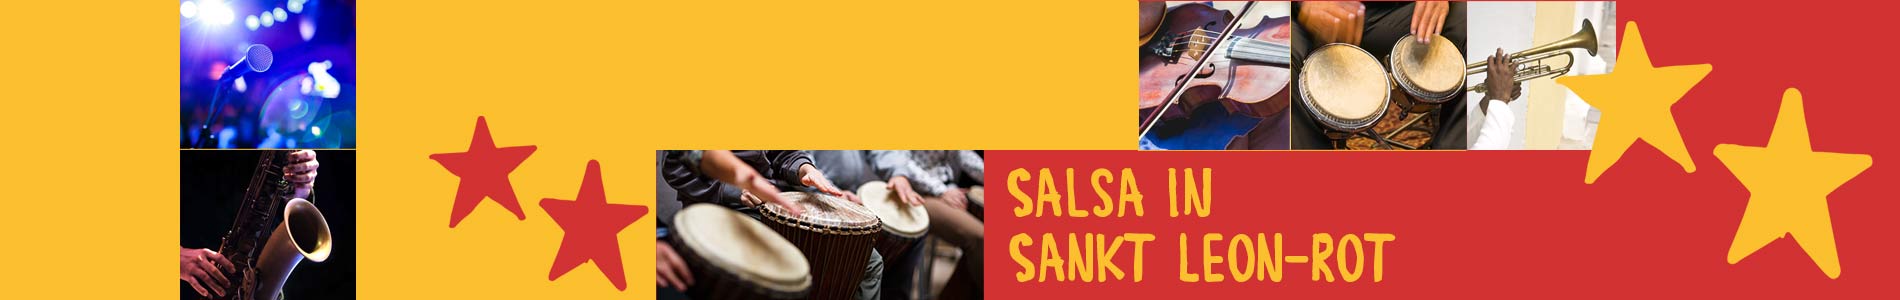 Salsa in Sankt Leon-Rot – Salsa lernen und tanzen, Tanzkurse, Partys, Veranstaltungen